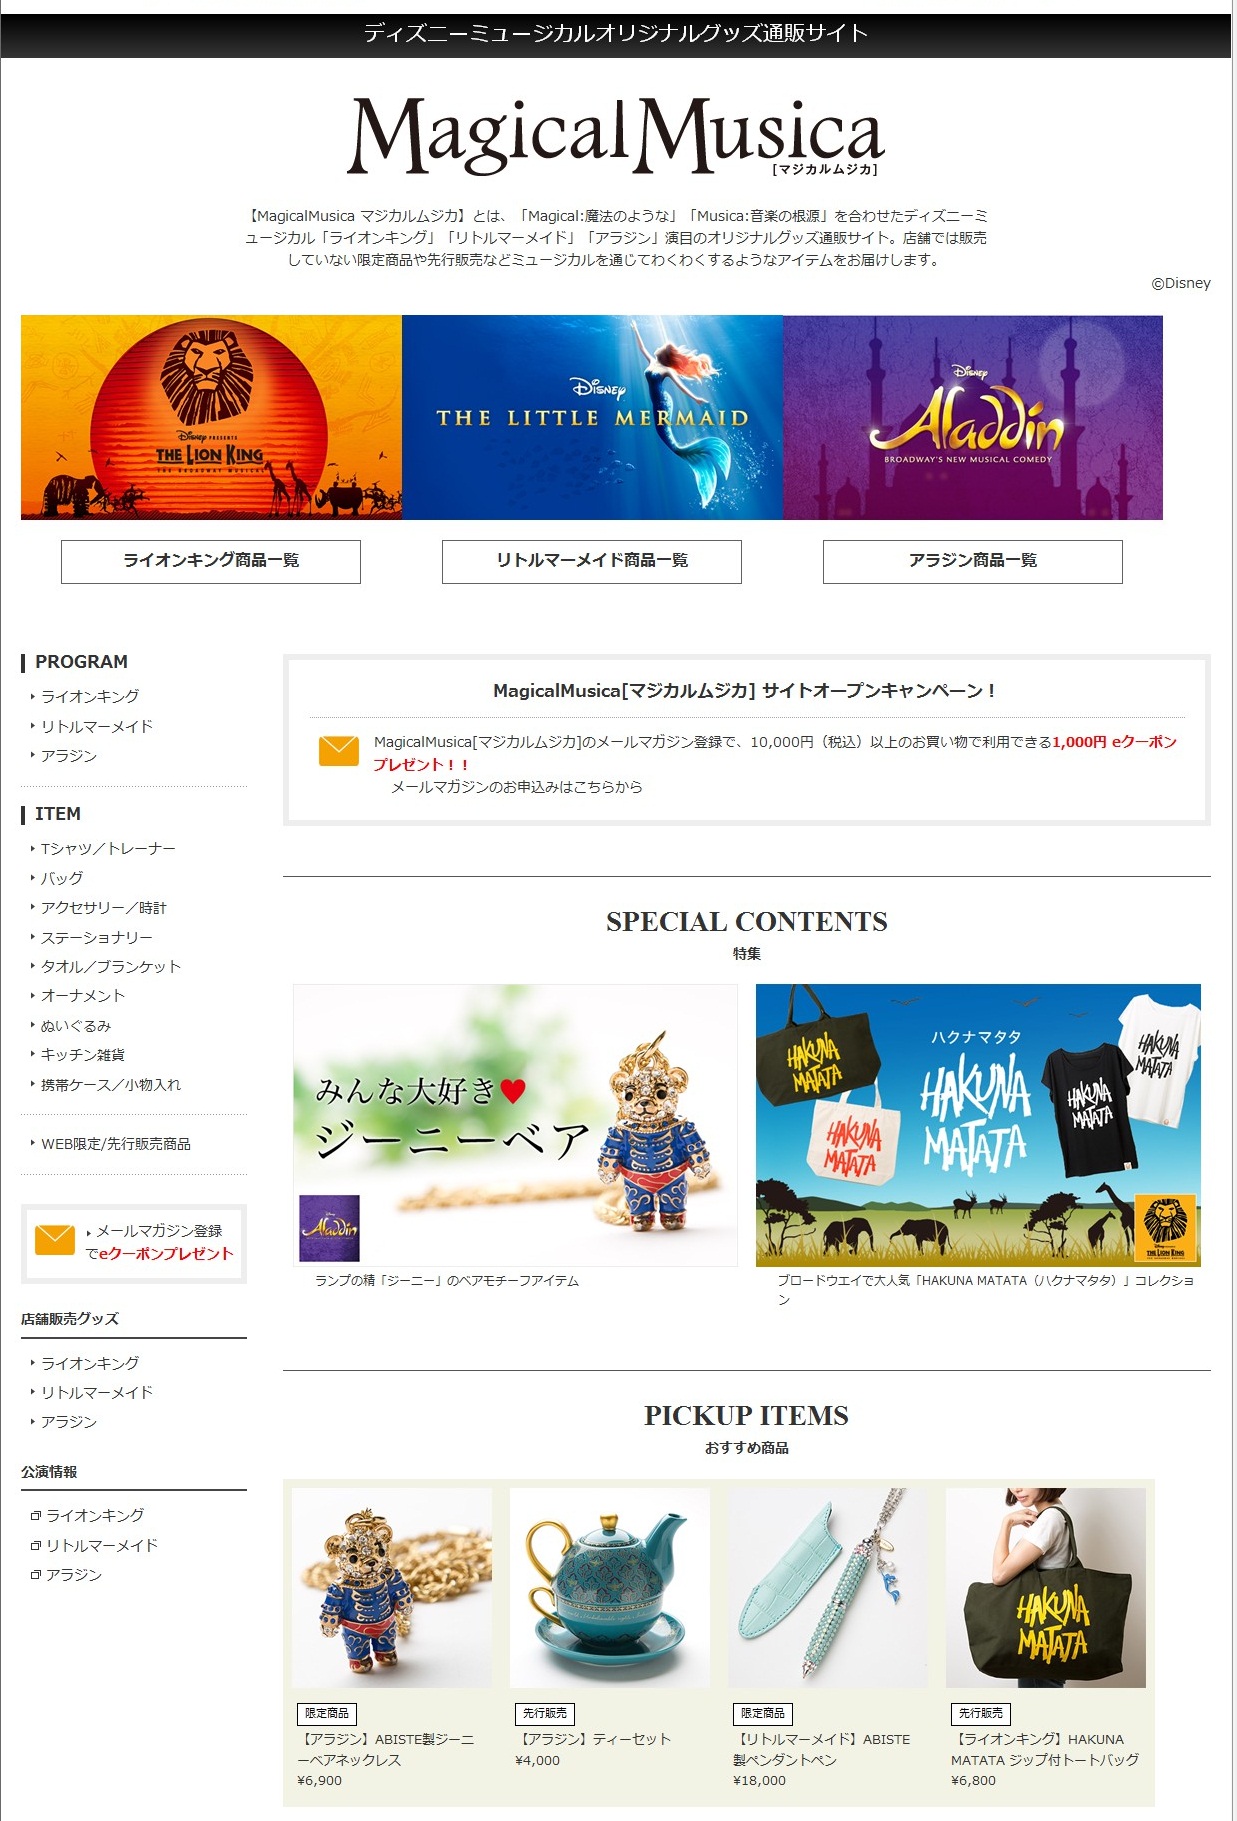 ディズニーミュージカルグッズ通販サイト Magicalmusica マジカルムジカ ディノスオンラインショップに8月1日オープン 株式会社ディノス セシールのプレスリリース